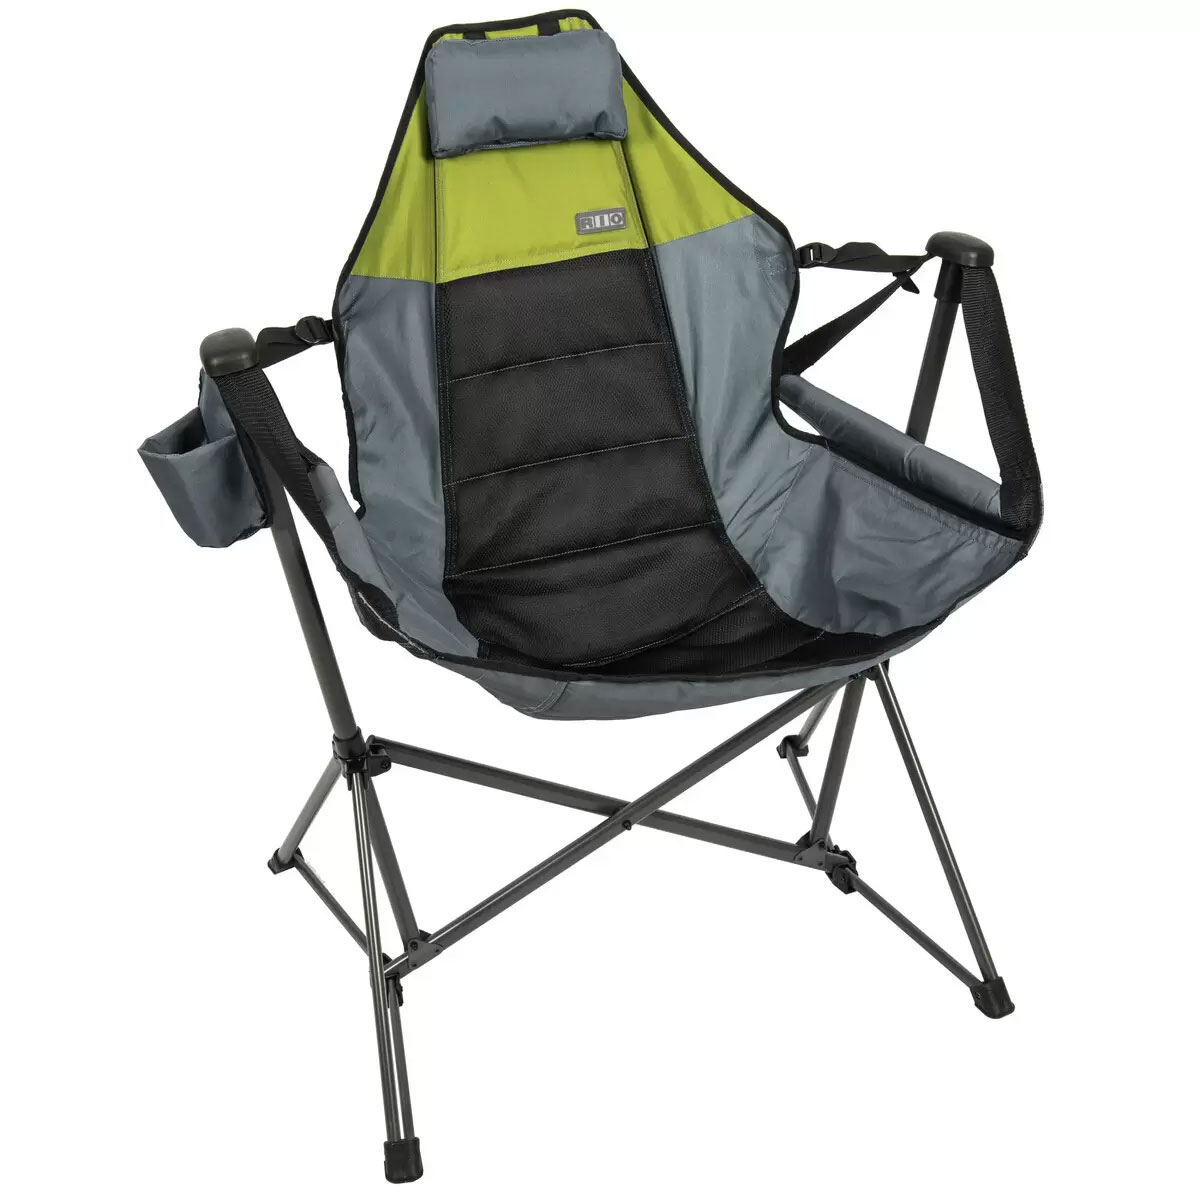 【送料無料♪】RIO GEAR スウィングハンモックチェア 収納バッグ付き/スイング/ポータブル/キャンプチェア/Outdoor Swinging Hammock Chair